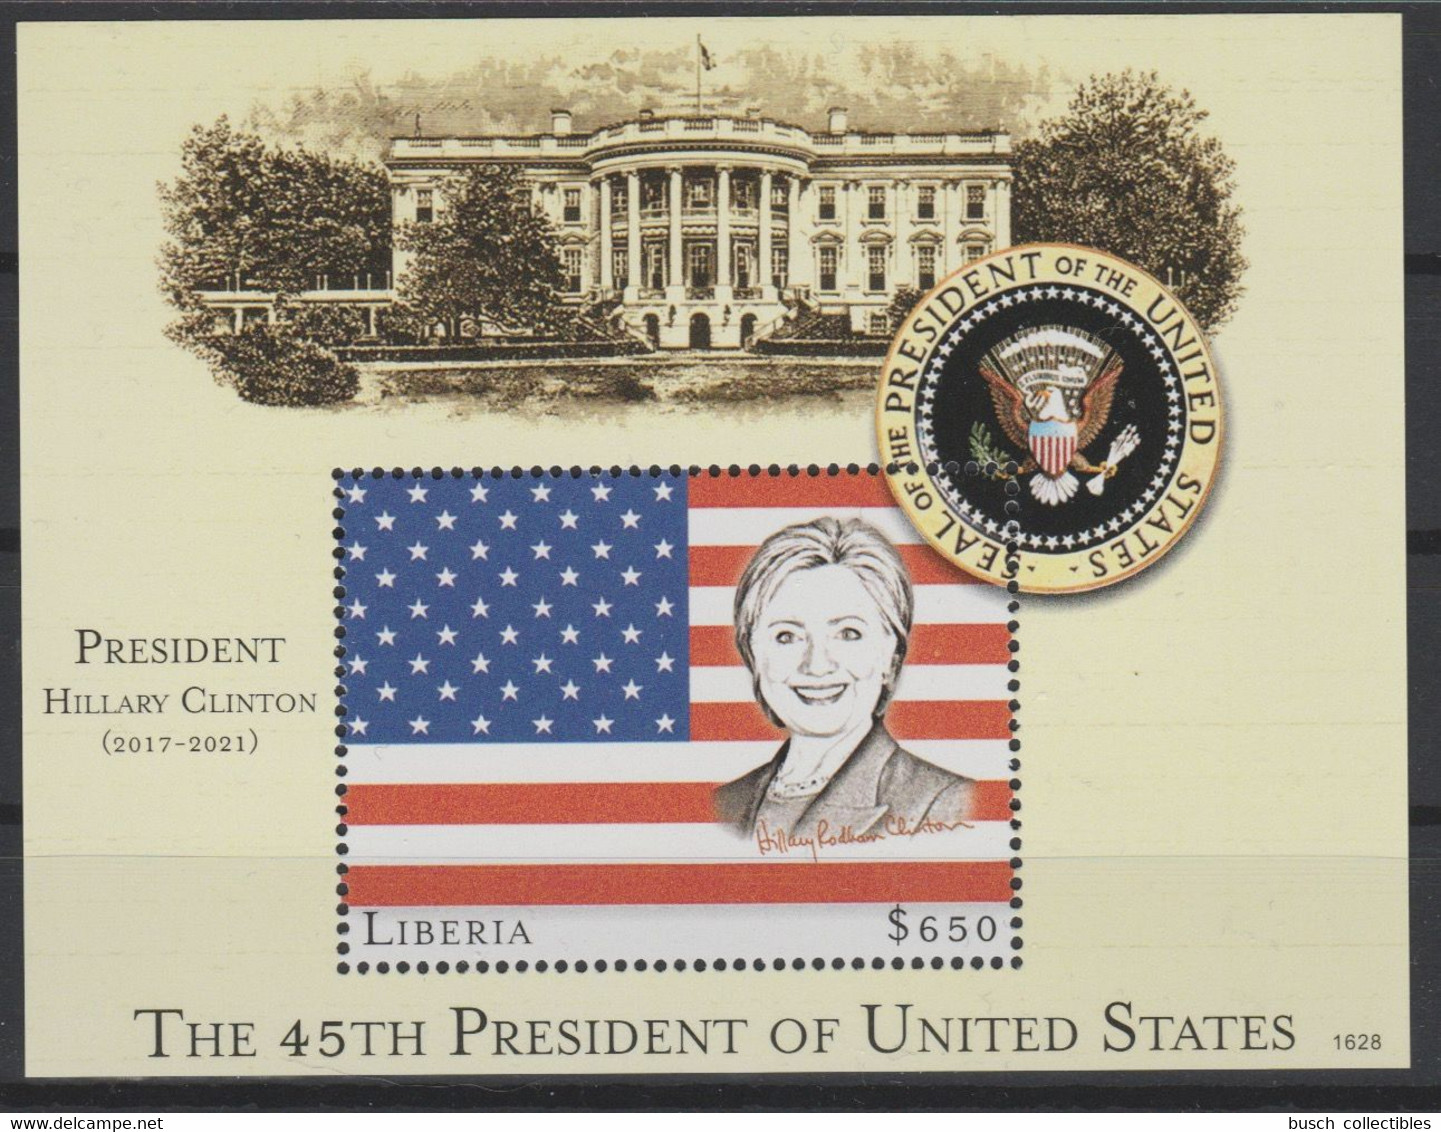 Liberia 2016 Mi. Bl. 754 UNISSUED NON EMIS Hillary Clinton 45th President United States White House Flag Stars Stripes - Briefmarken